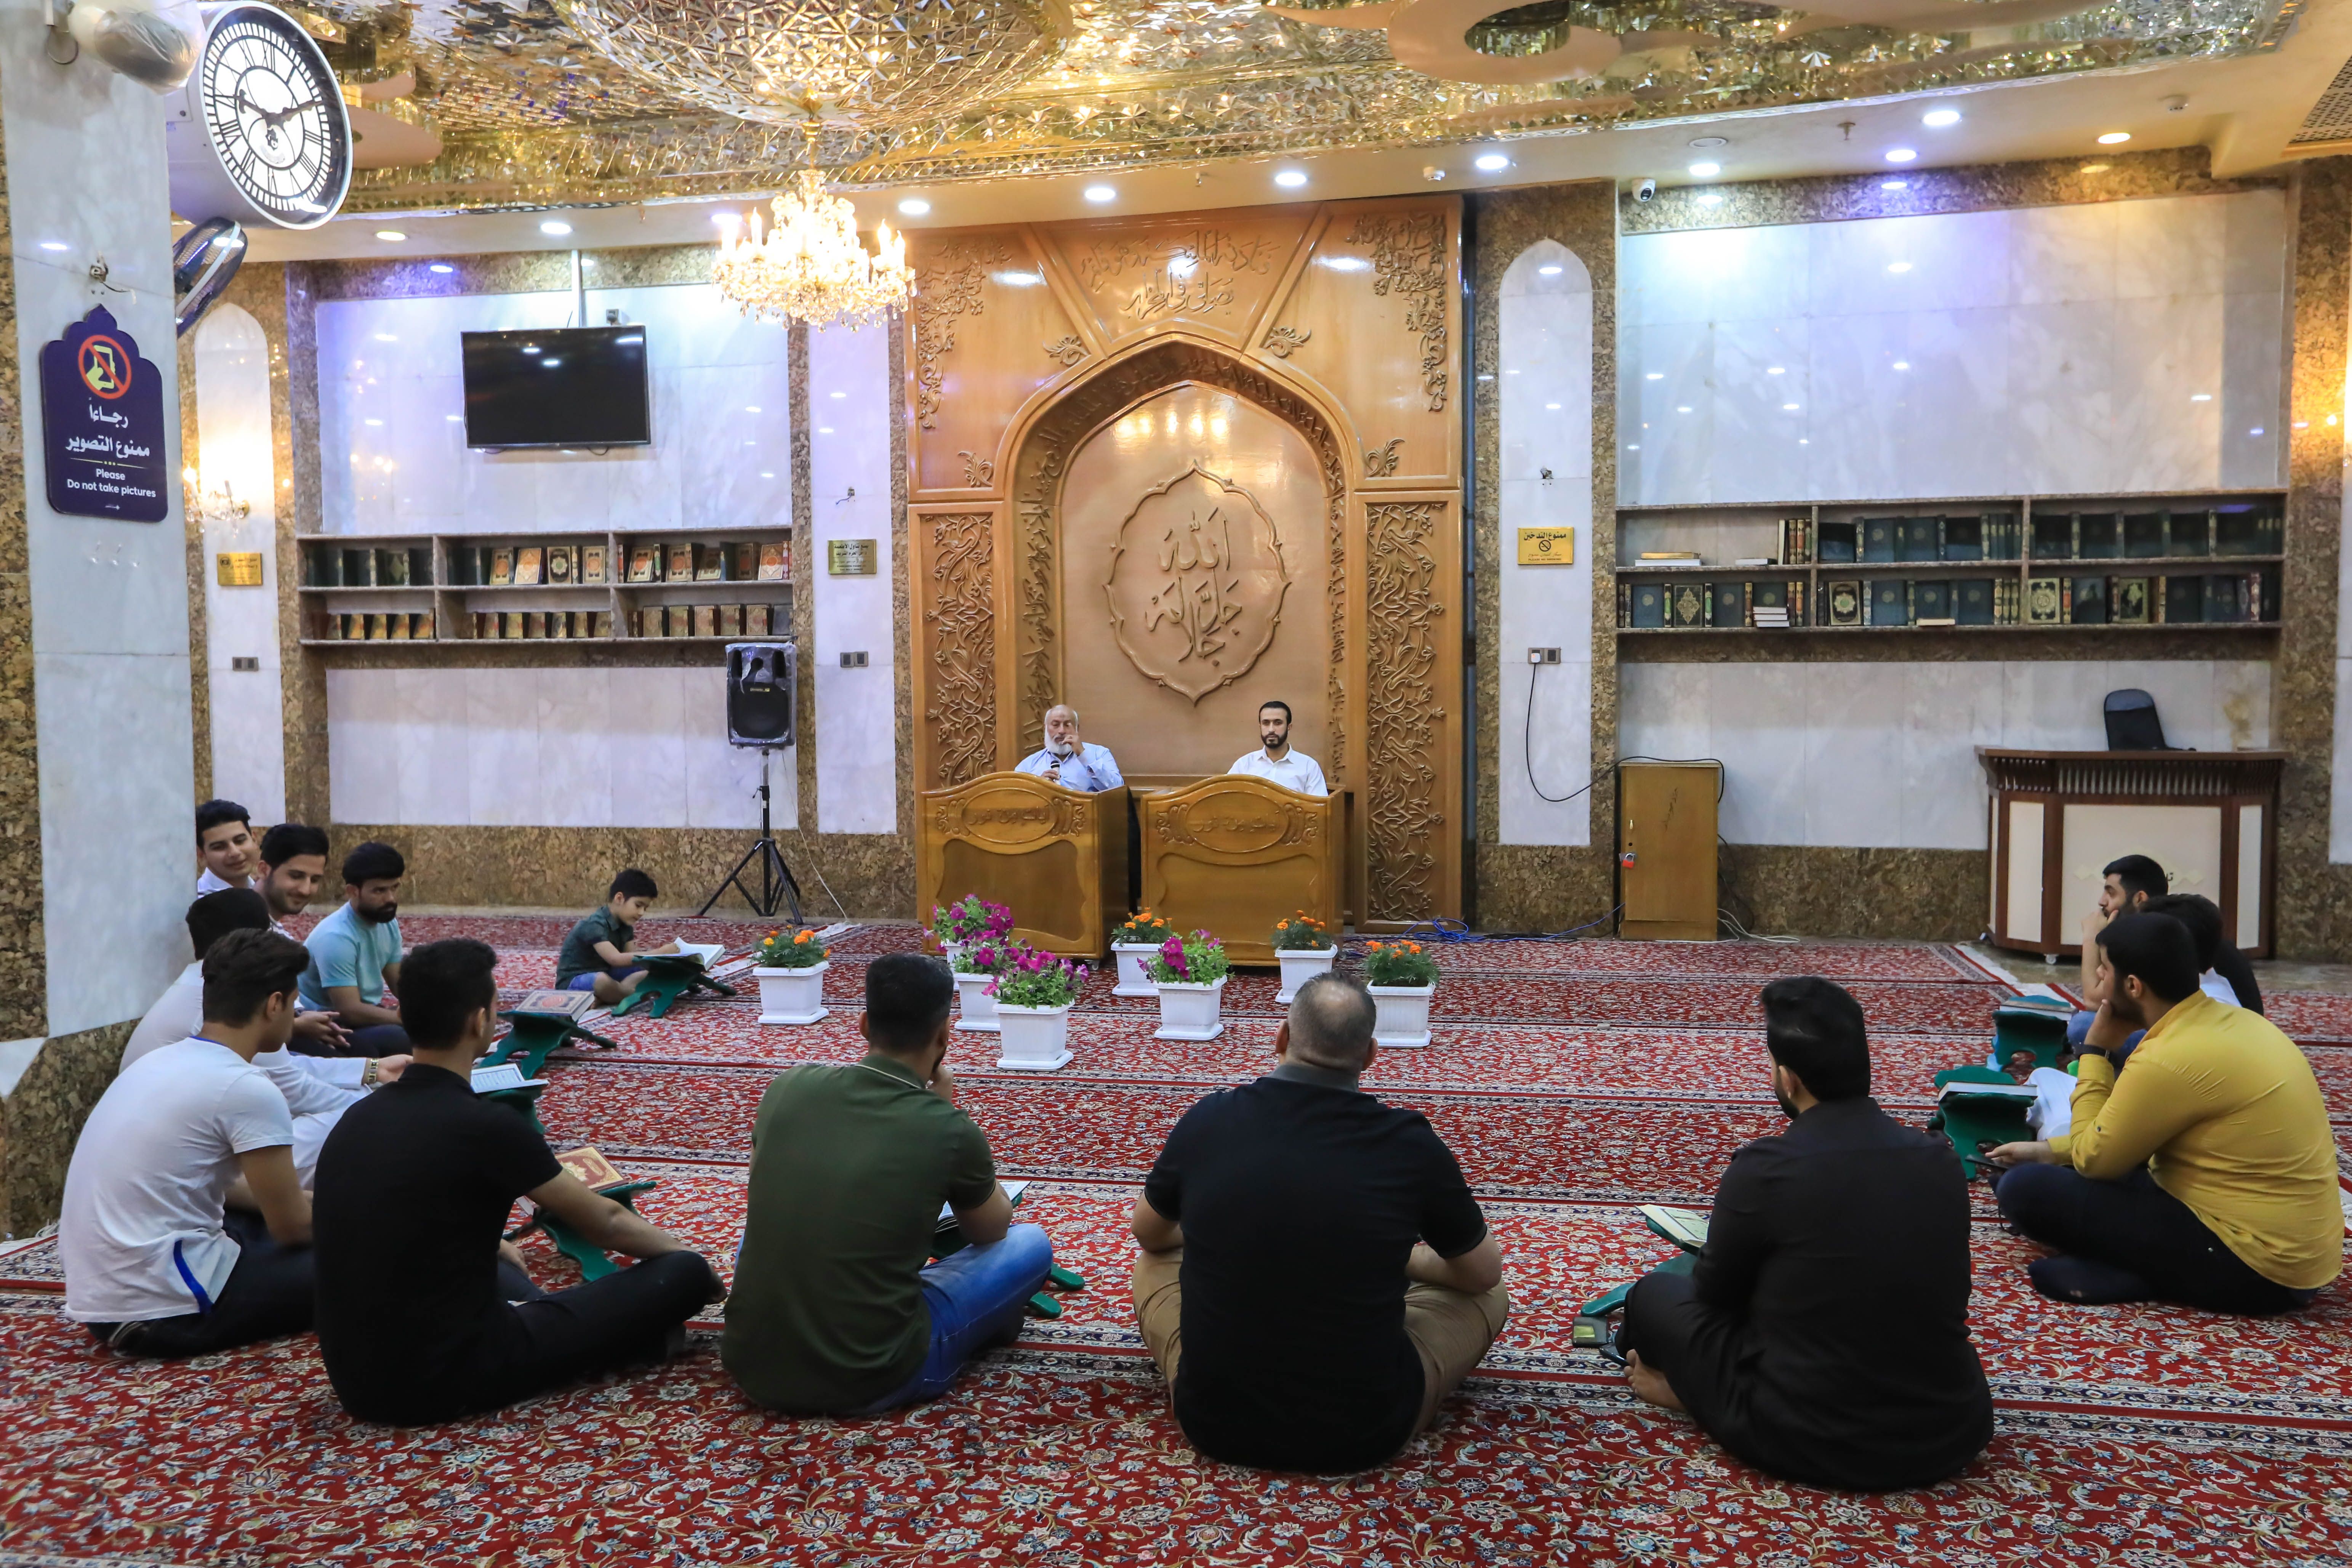 وحدة التلاوة تقيم دورة تطويرية في أحكام التلاوة والنغم القرآني بمشاركة عدد من المتدربين